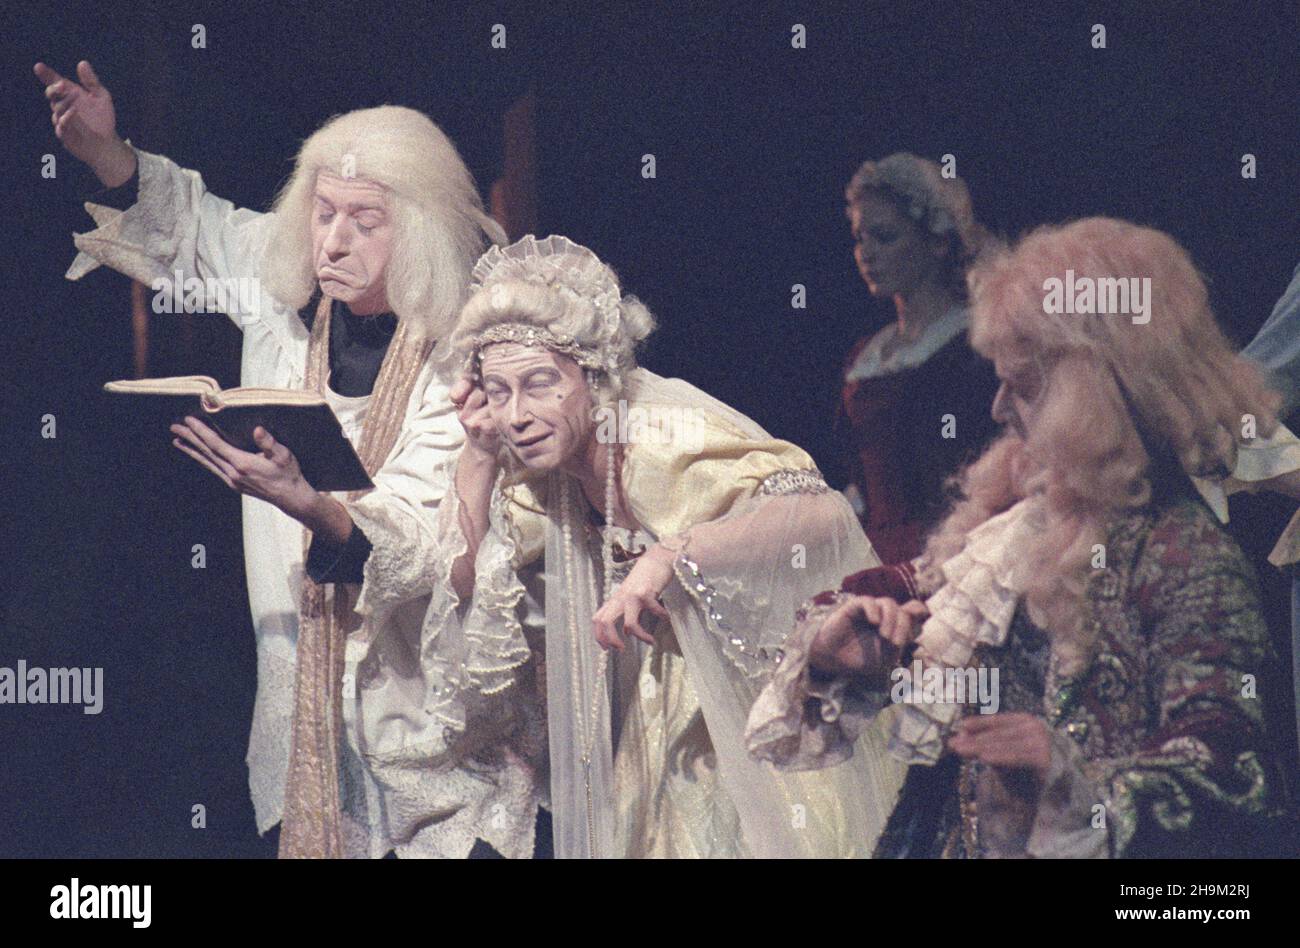 Wroc³aw 01.1986. Wroc³awski Teatr Pantomimy Henryka Tomaszewskiego, spektakl pt. Syn Marnotrawny. Nz. m.in. Marek Oleksy jako Syn Marnotrawny (1P).  mw  PAP/Jerzy Ochoñski    Dok³adny dzieñ wydarzenia nieustalony.         Wroclaw, January 1986. The Henryk Tomaszewski Pantomime Theatre in Wroclaw, the performance of 'Prodigal Son.' Marek Oleksy (1R) as Prodigal Son.   mw  PAP/Jerzy Ochonski    Event day unknown. Stock Photo